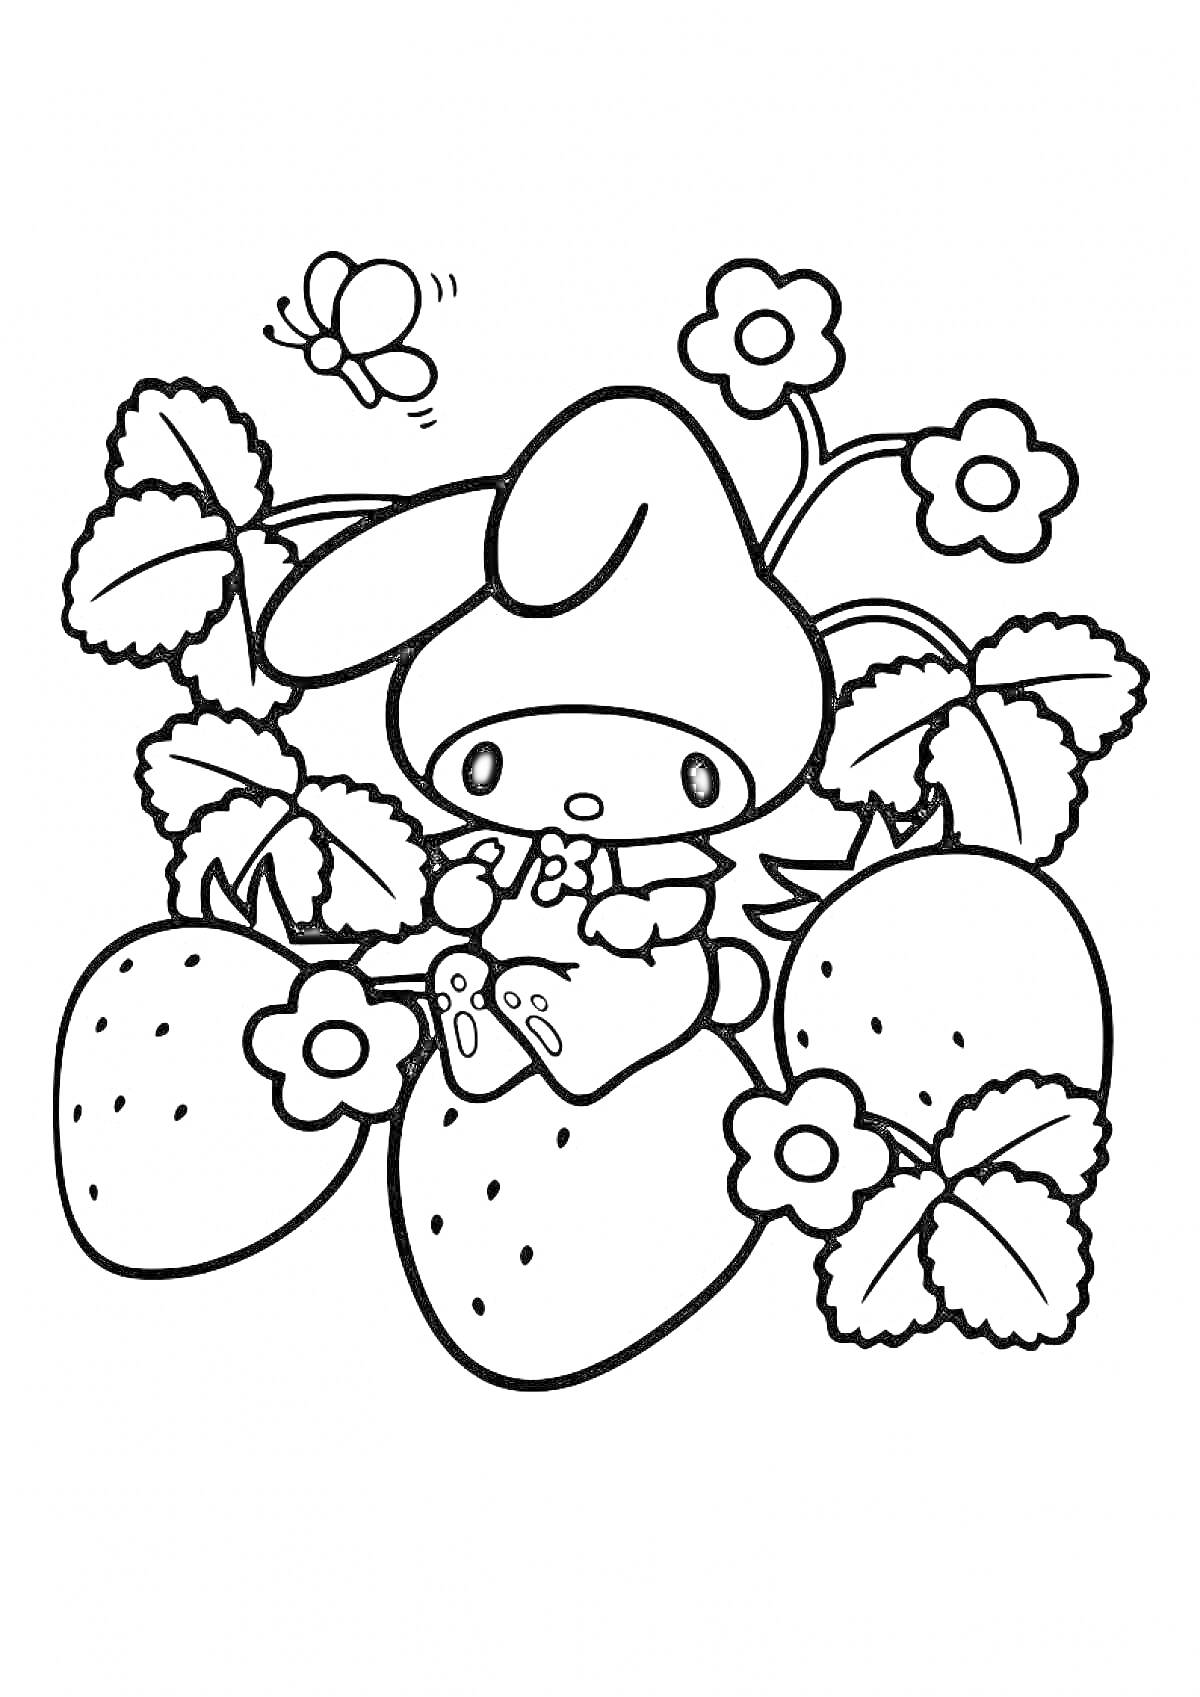 Раскраска Май Мелоди среди клубники и цветов с бабочкой